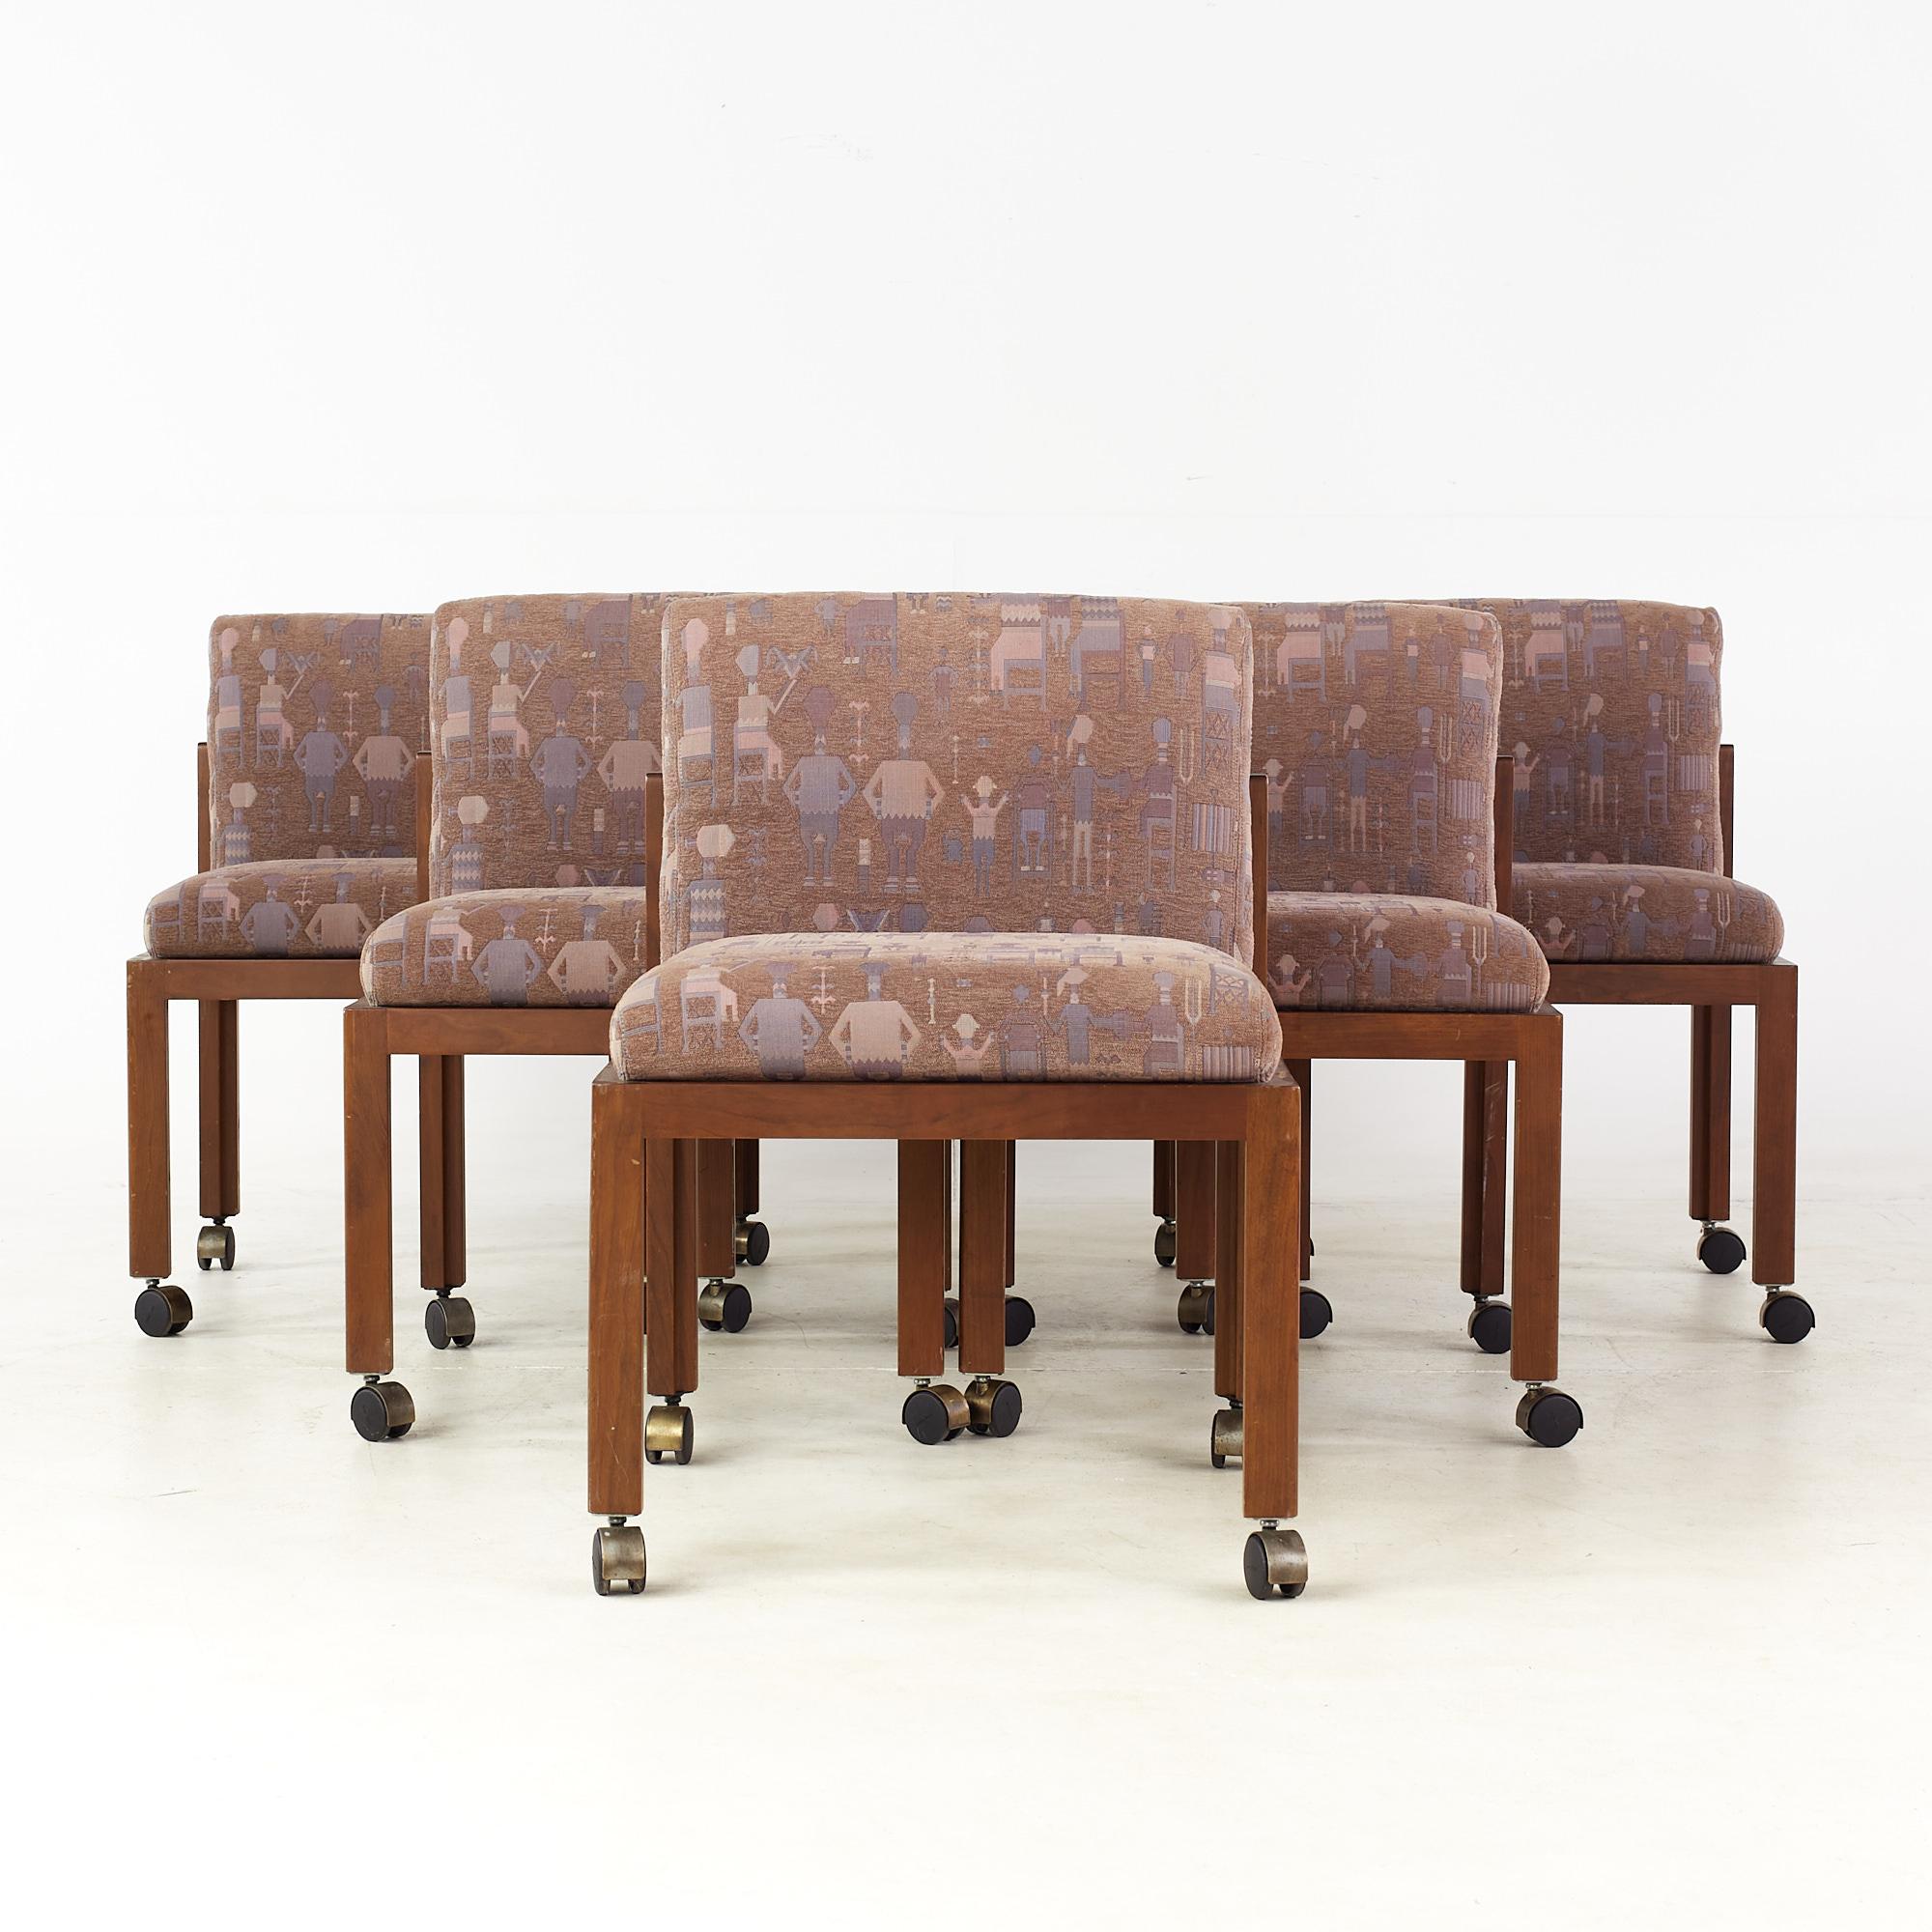 Esstischstühle im Stil von Frank Lloyd Wright aus der Mitte des Jahrhunderts - 6er-Set

Jeder armlose Stuhl misst: 22,5 breit x 22,75 tief x 32 hoch, mit einer Sitzhöhe von 19,5 Zoll

Alle Möbelstücke sind in einem so genannten restaurierten